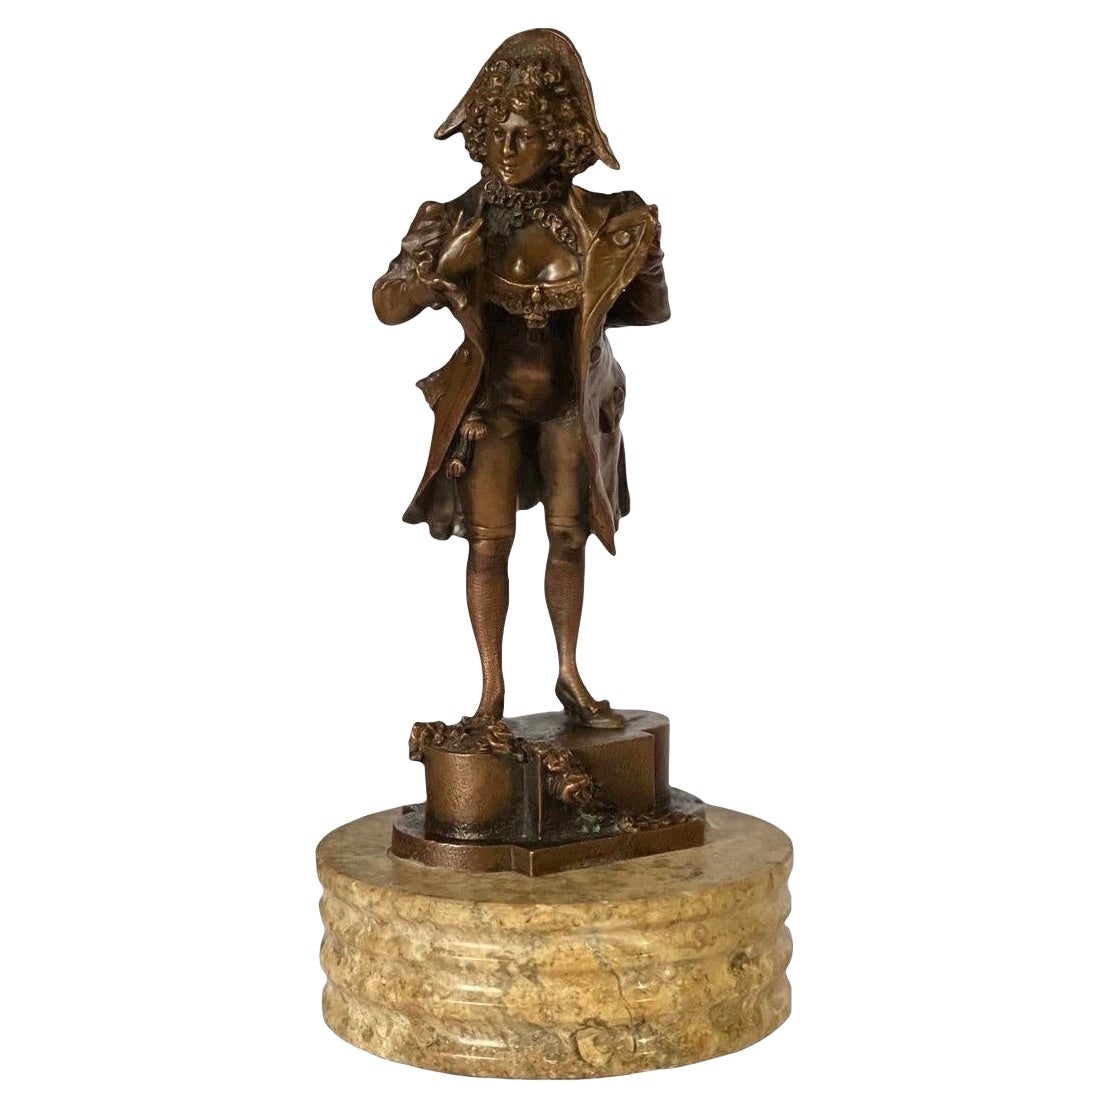 Figurine en bronze habillée de l'époque napoléonienne du XIXe siècle